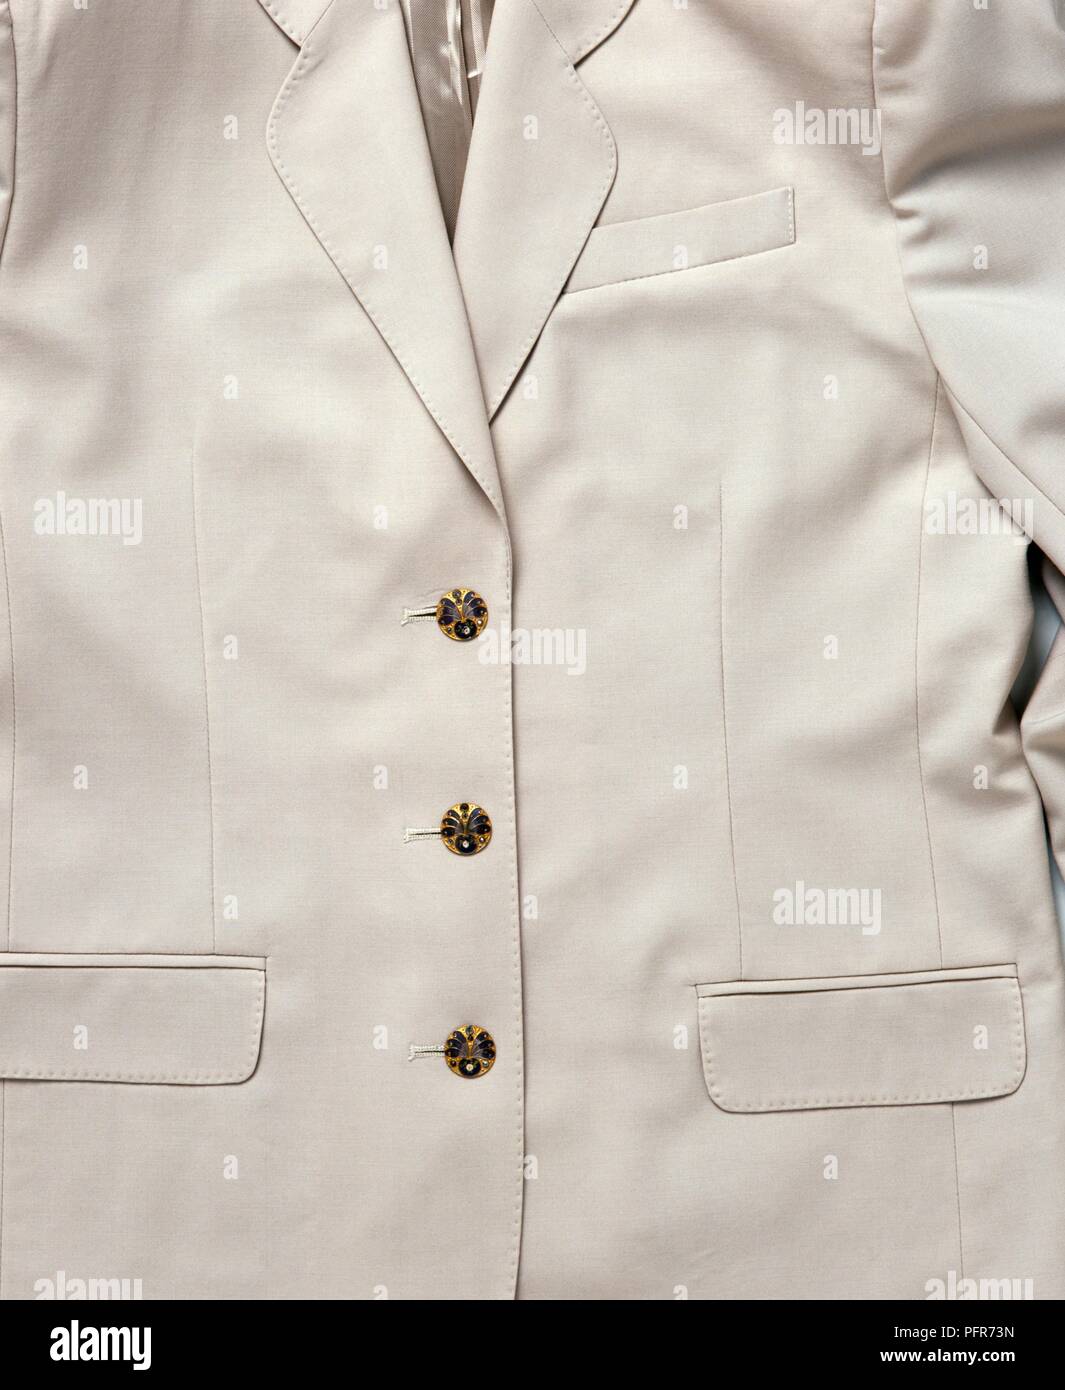 Boutons en métal émaillé et en relief sur un blazer blanc, close-up Banque D'Images